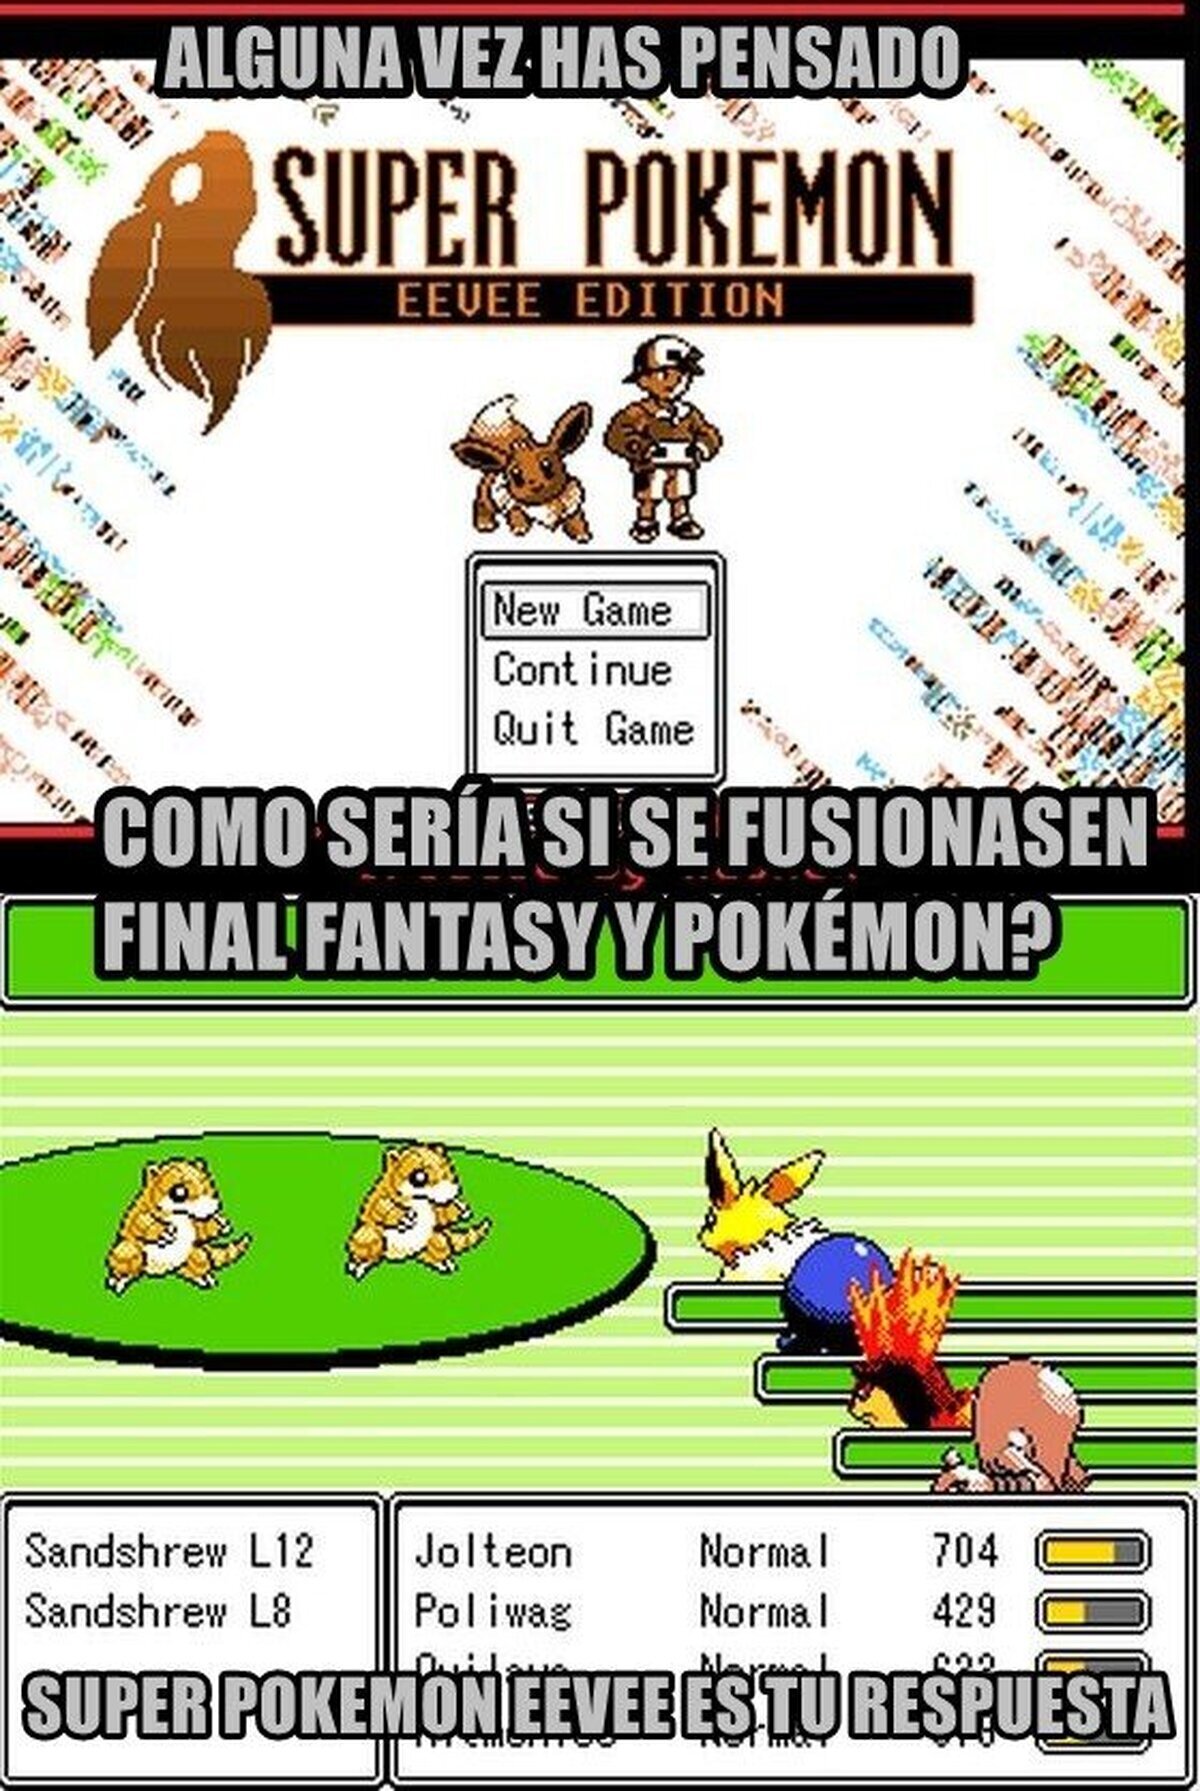 La fusión entre Final Fantasy y Pokémon